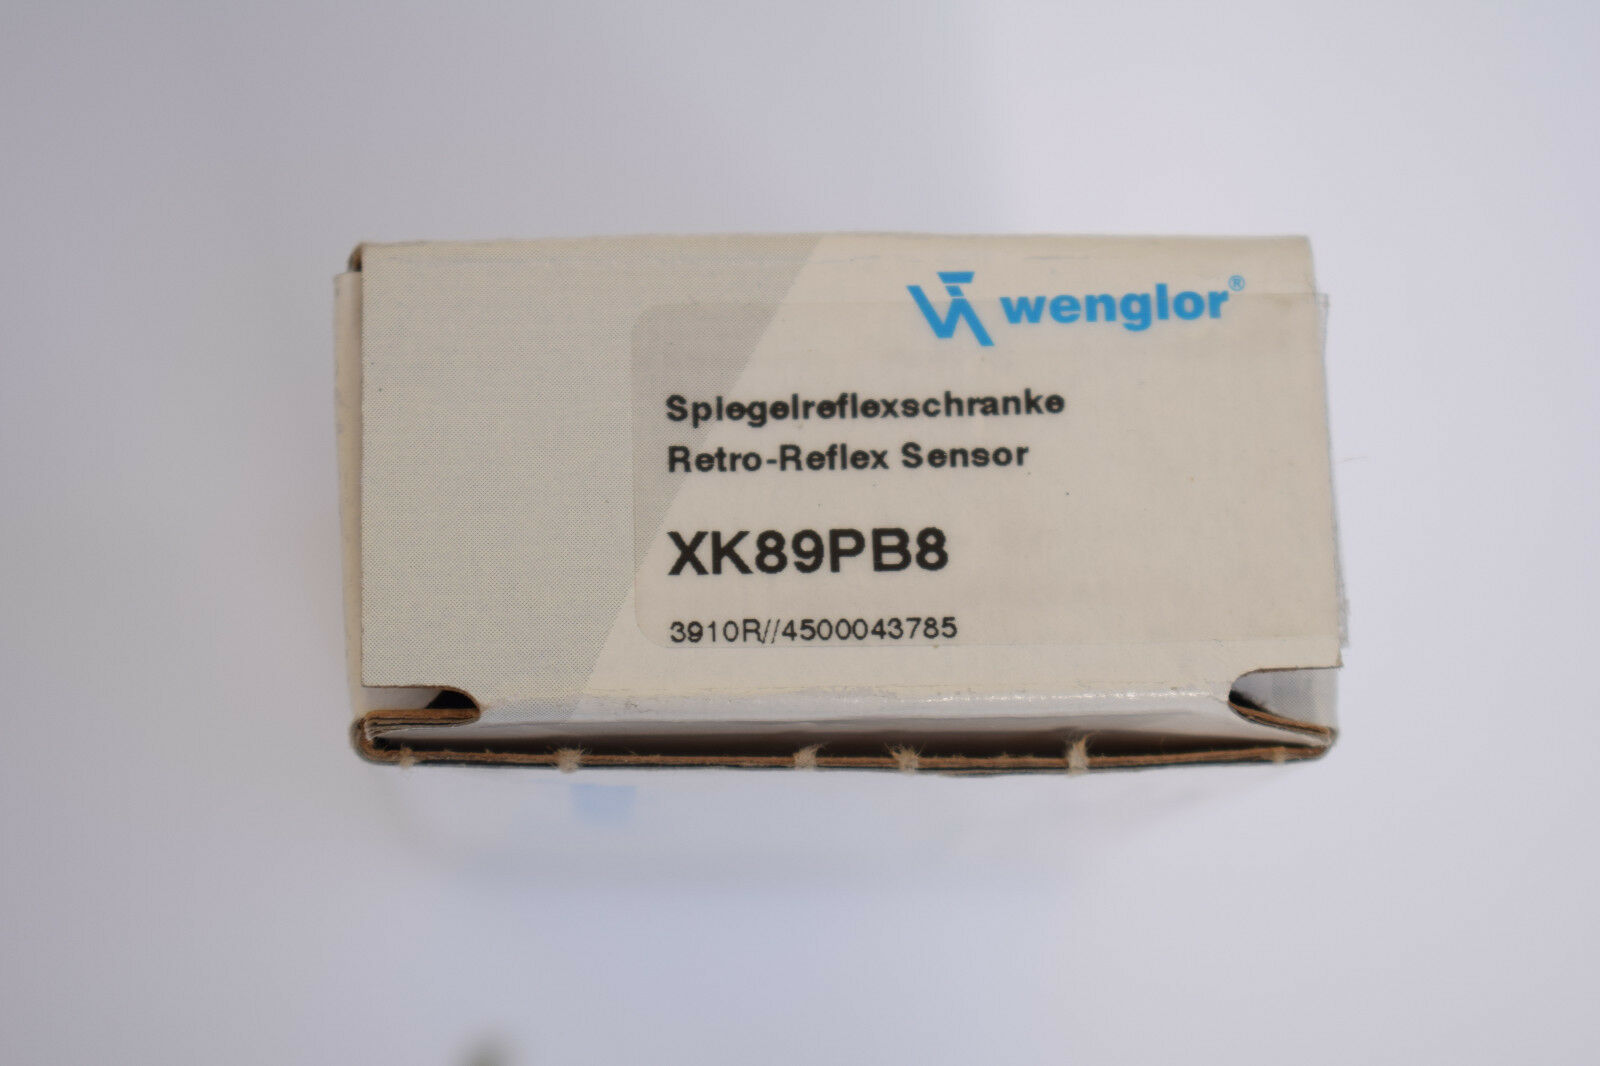 Wenglor Spiegelreflexschranke XK89PB8 